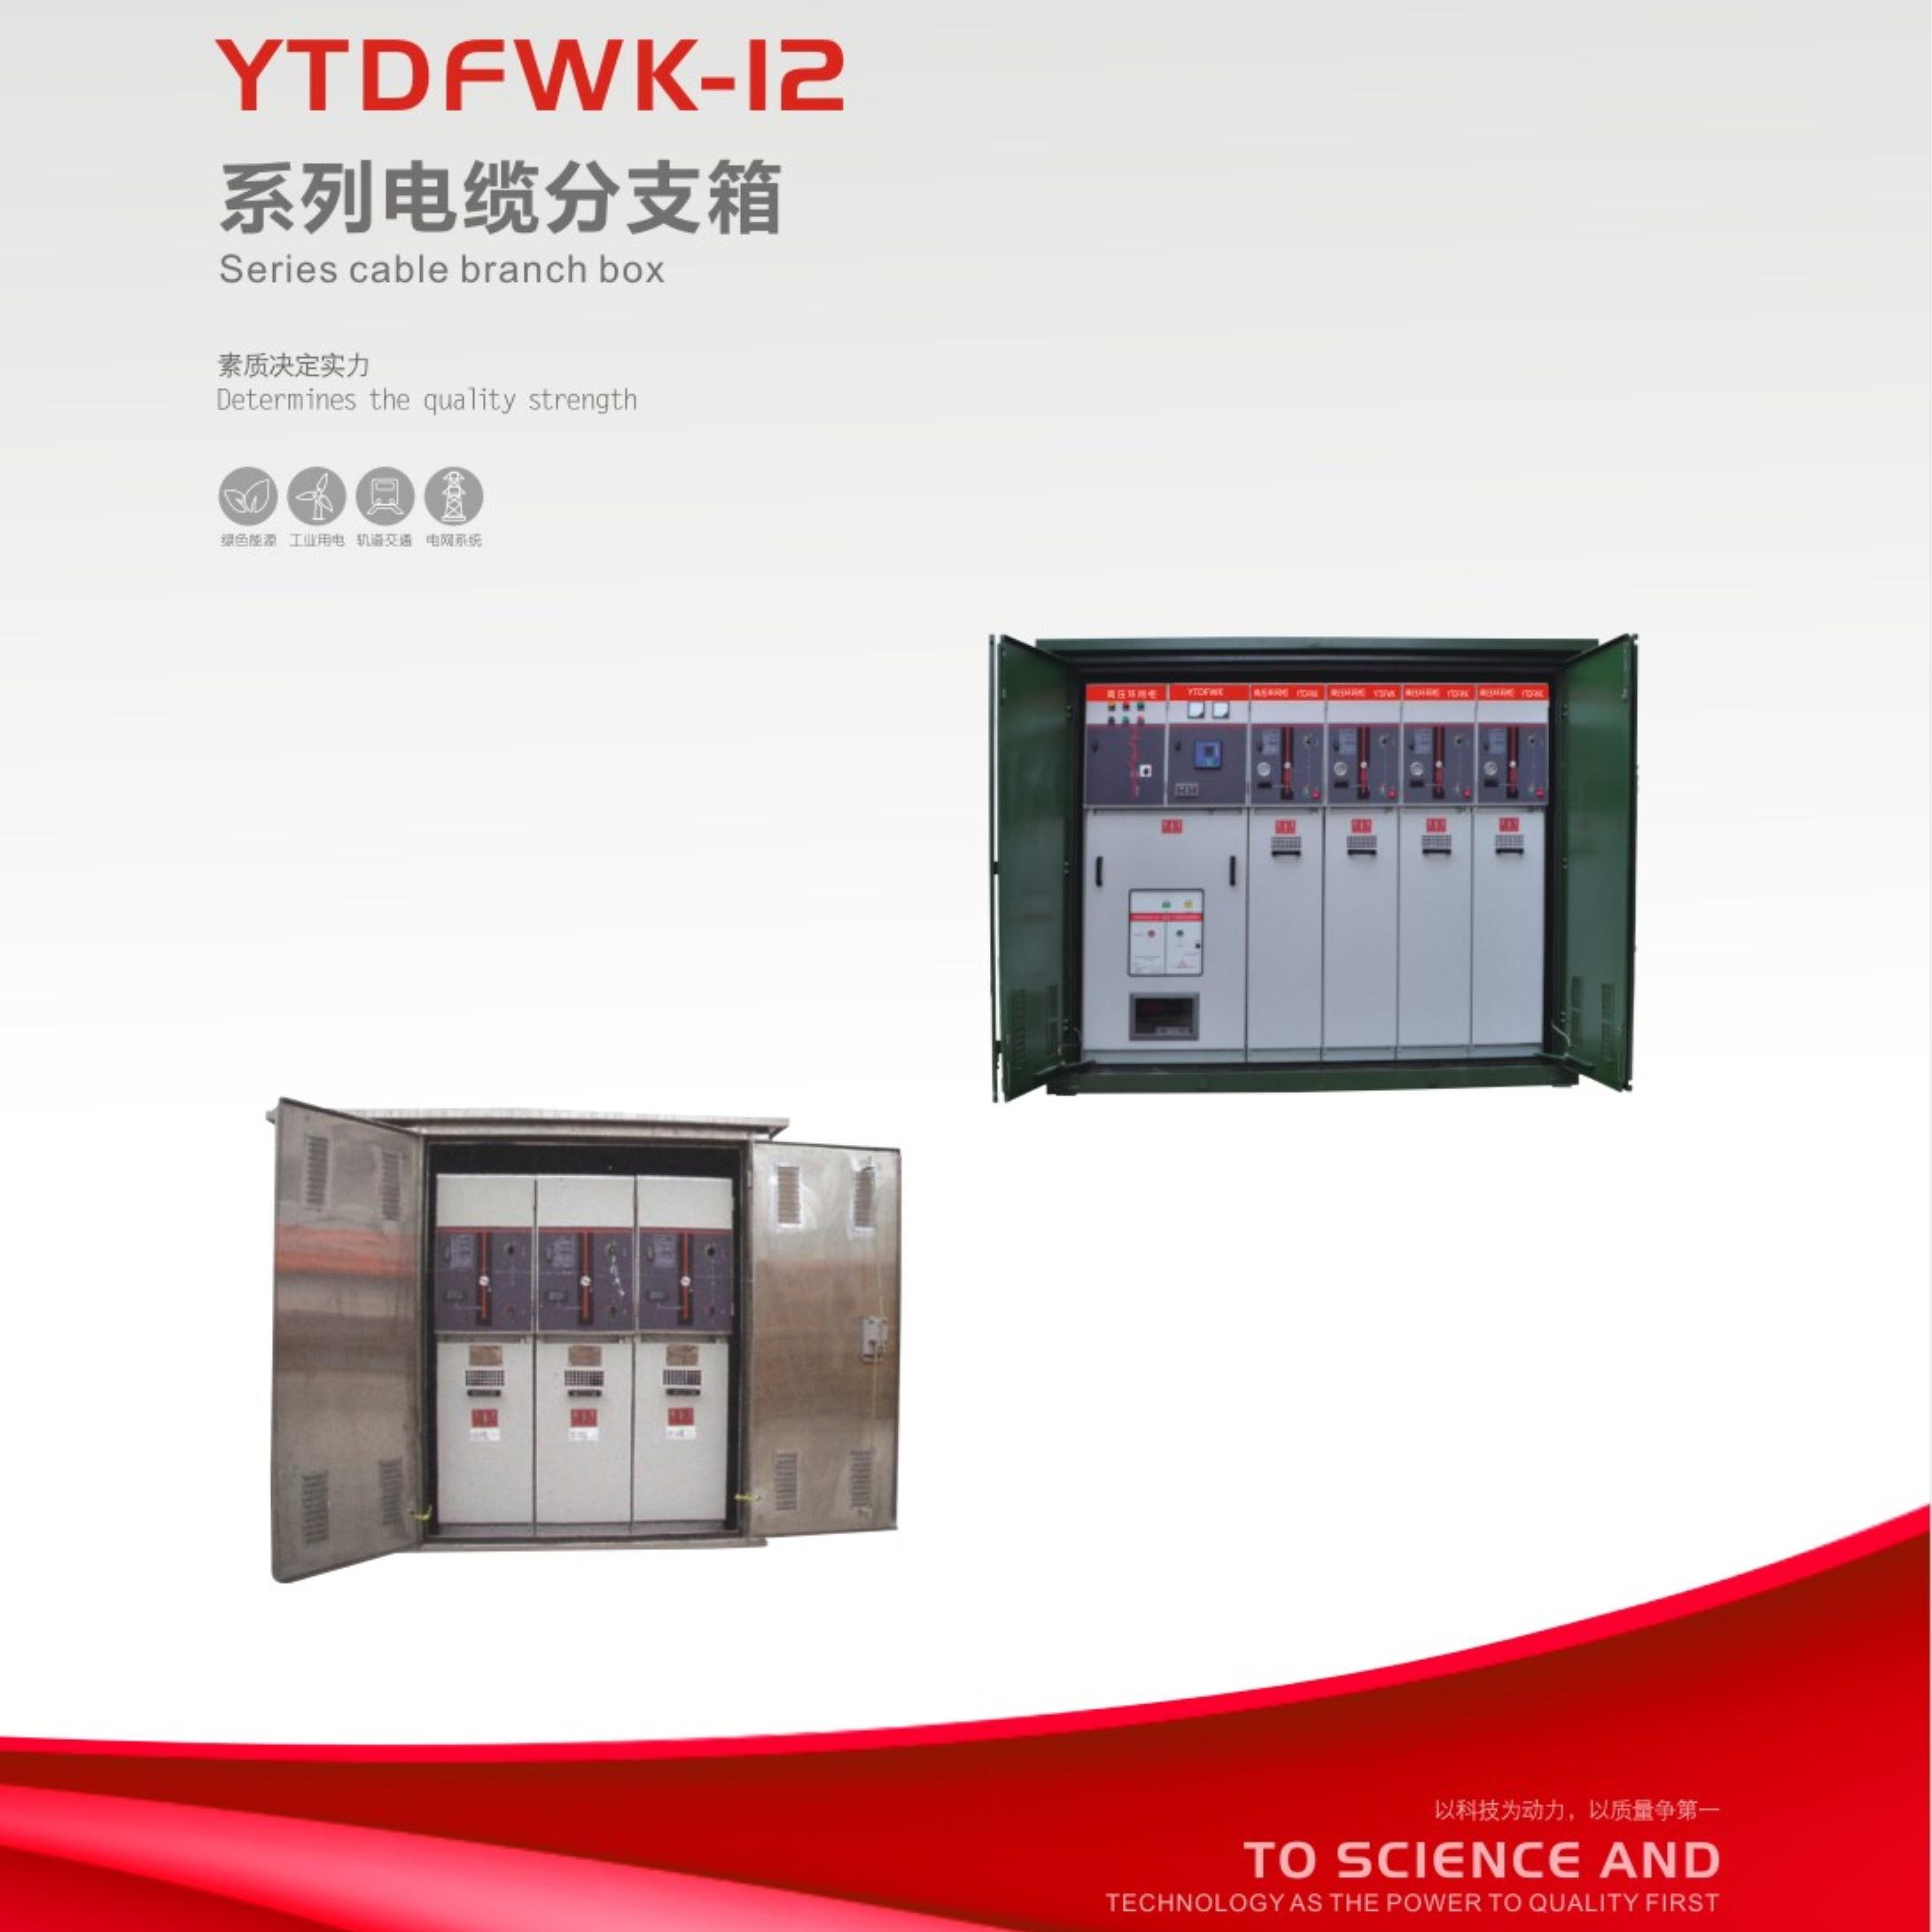 YTDFWK-12系列电缆分支箱